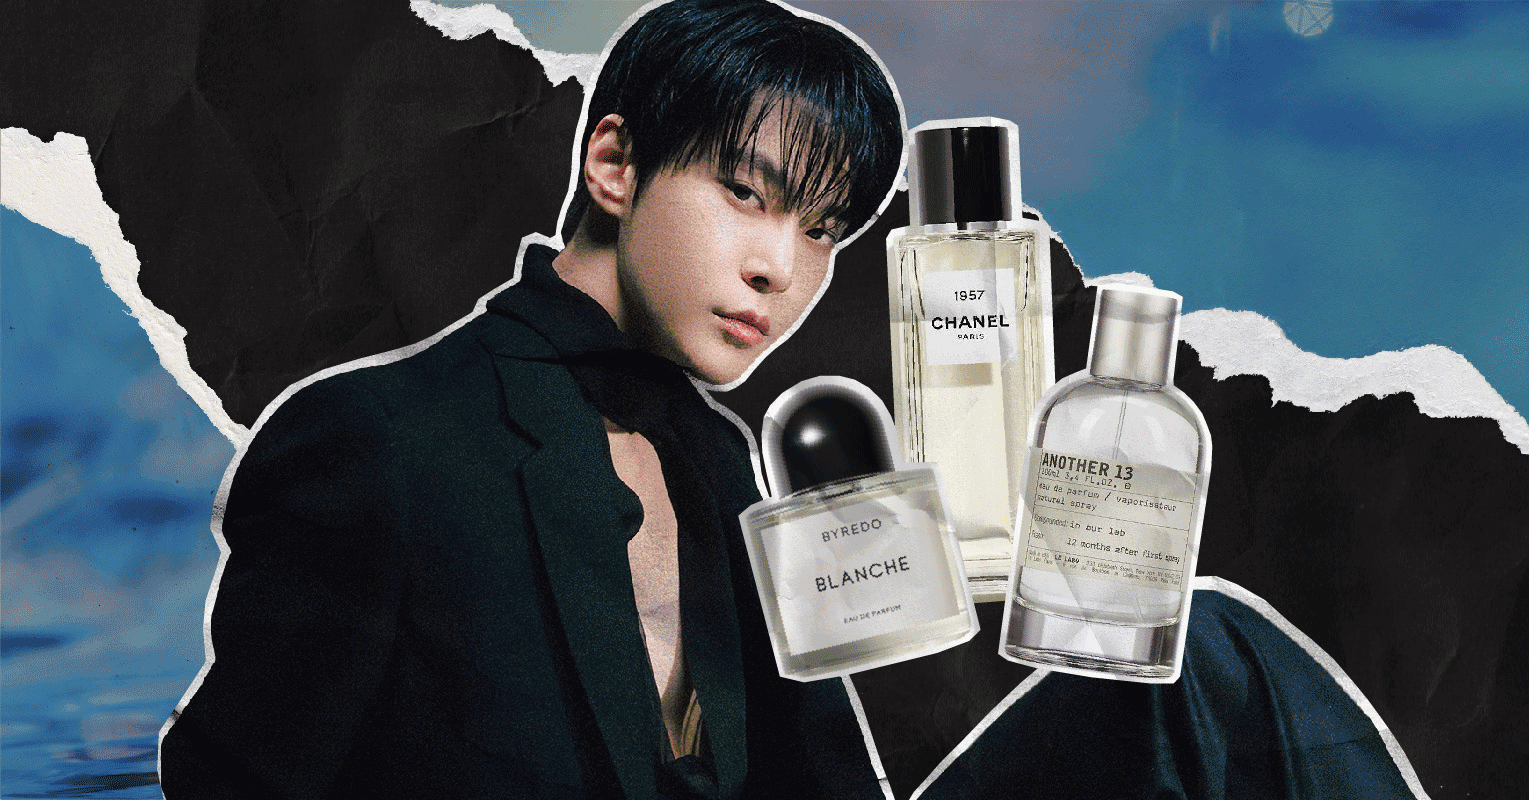 The Perfume of NCT DOJAEJUNG - EnVi Media